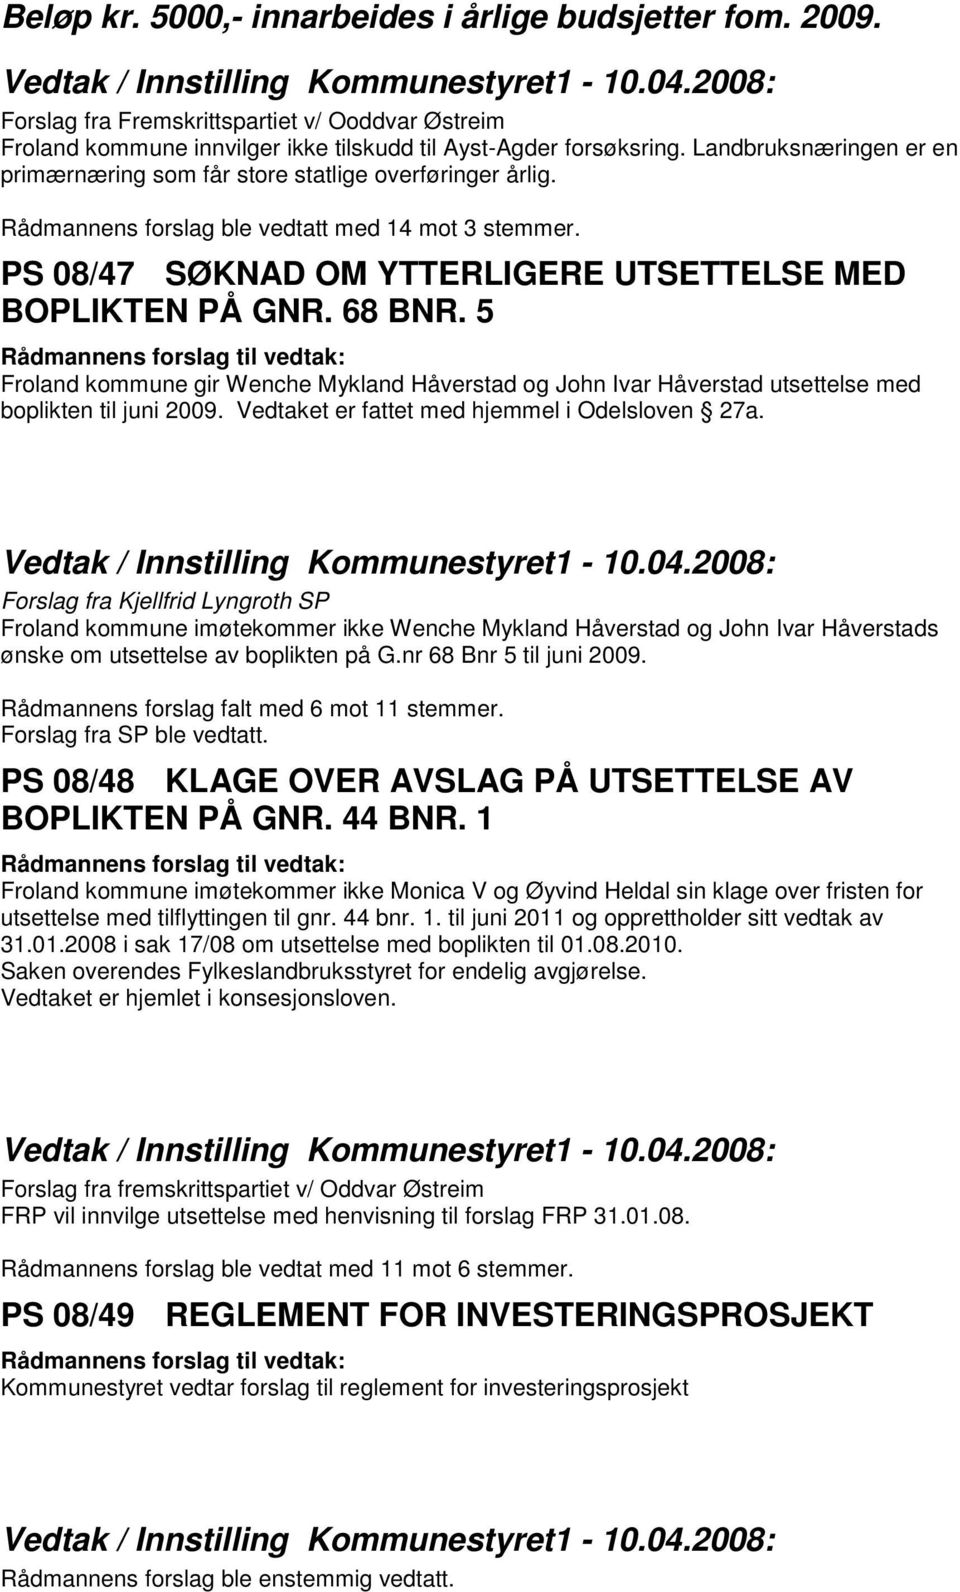 68 BNR. 5 Froland kommune gir Wenche Mykland Håverstad og John Ivar Håverstad utsettelse med boplikten til juni 2009. Vedtaket er fattet med hjemmel i Odelsloven 27a.